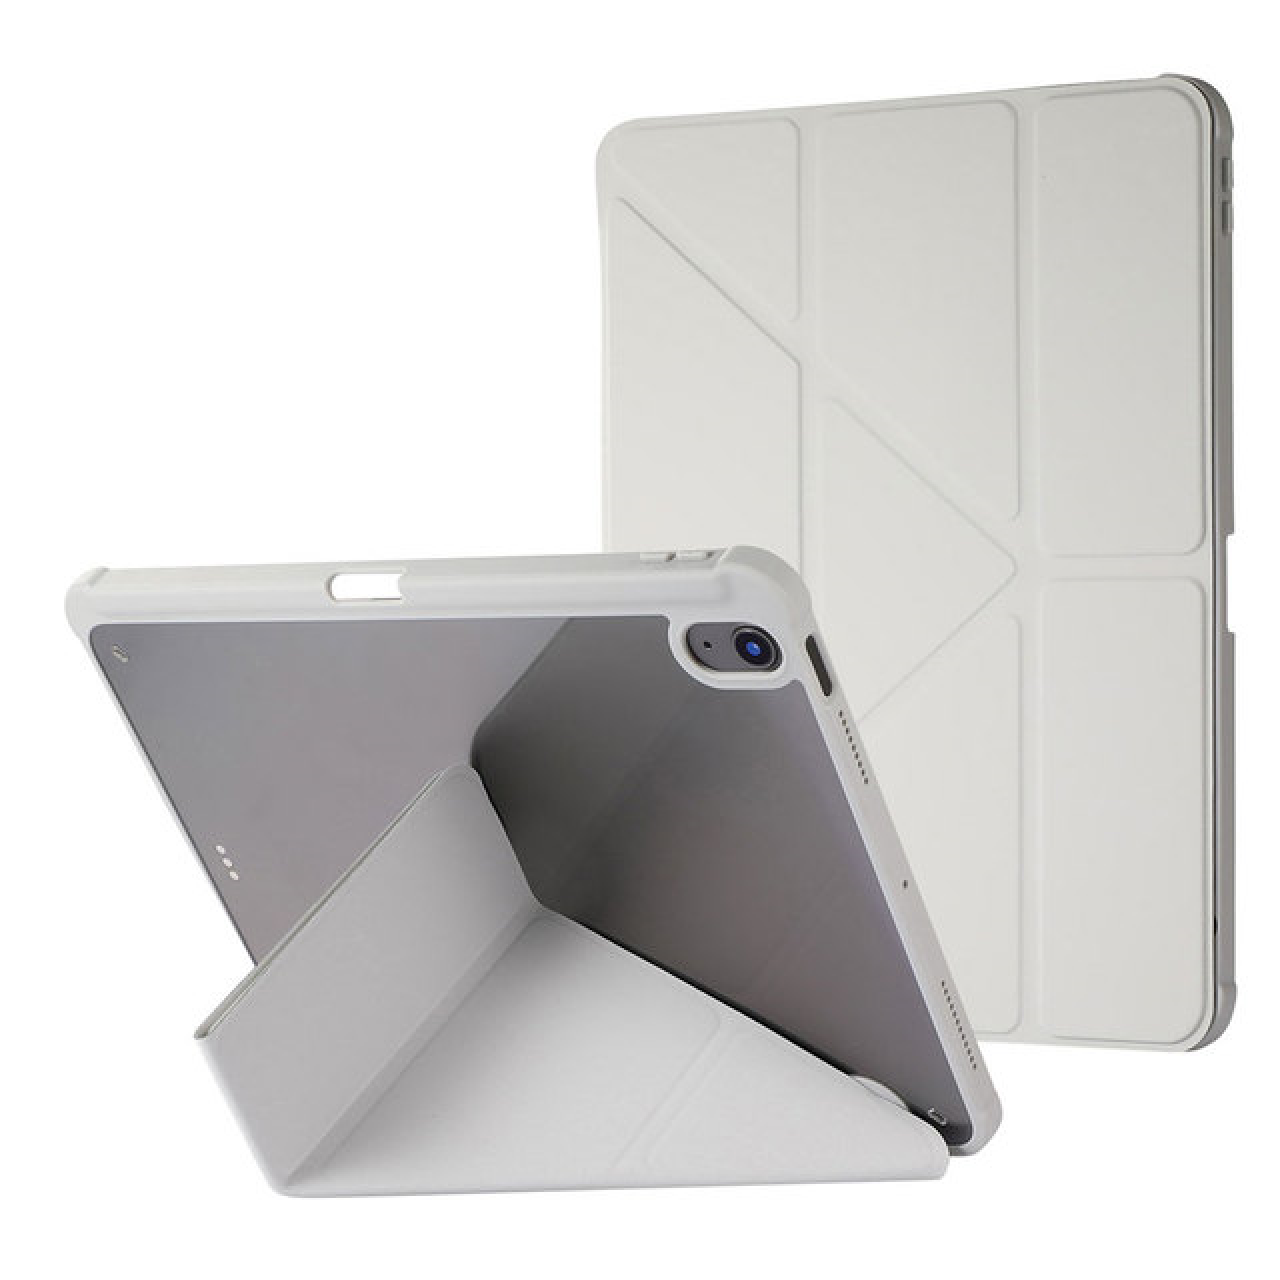 Θήκη Τάμπλετ Μαγνητική Apple iPad Air 9.7 inch 2017-2018 με Προστασία Κάμερας και Θέση για Γραφίδα - Tablet Case - Grey